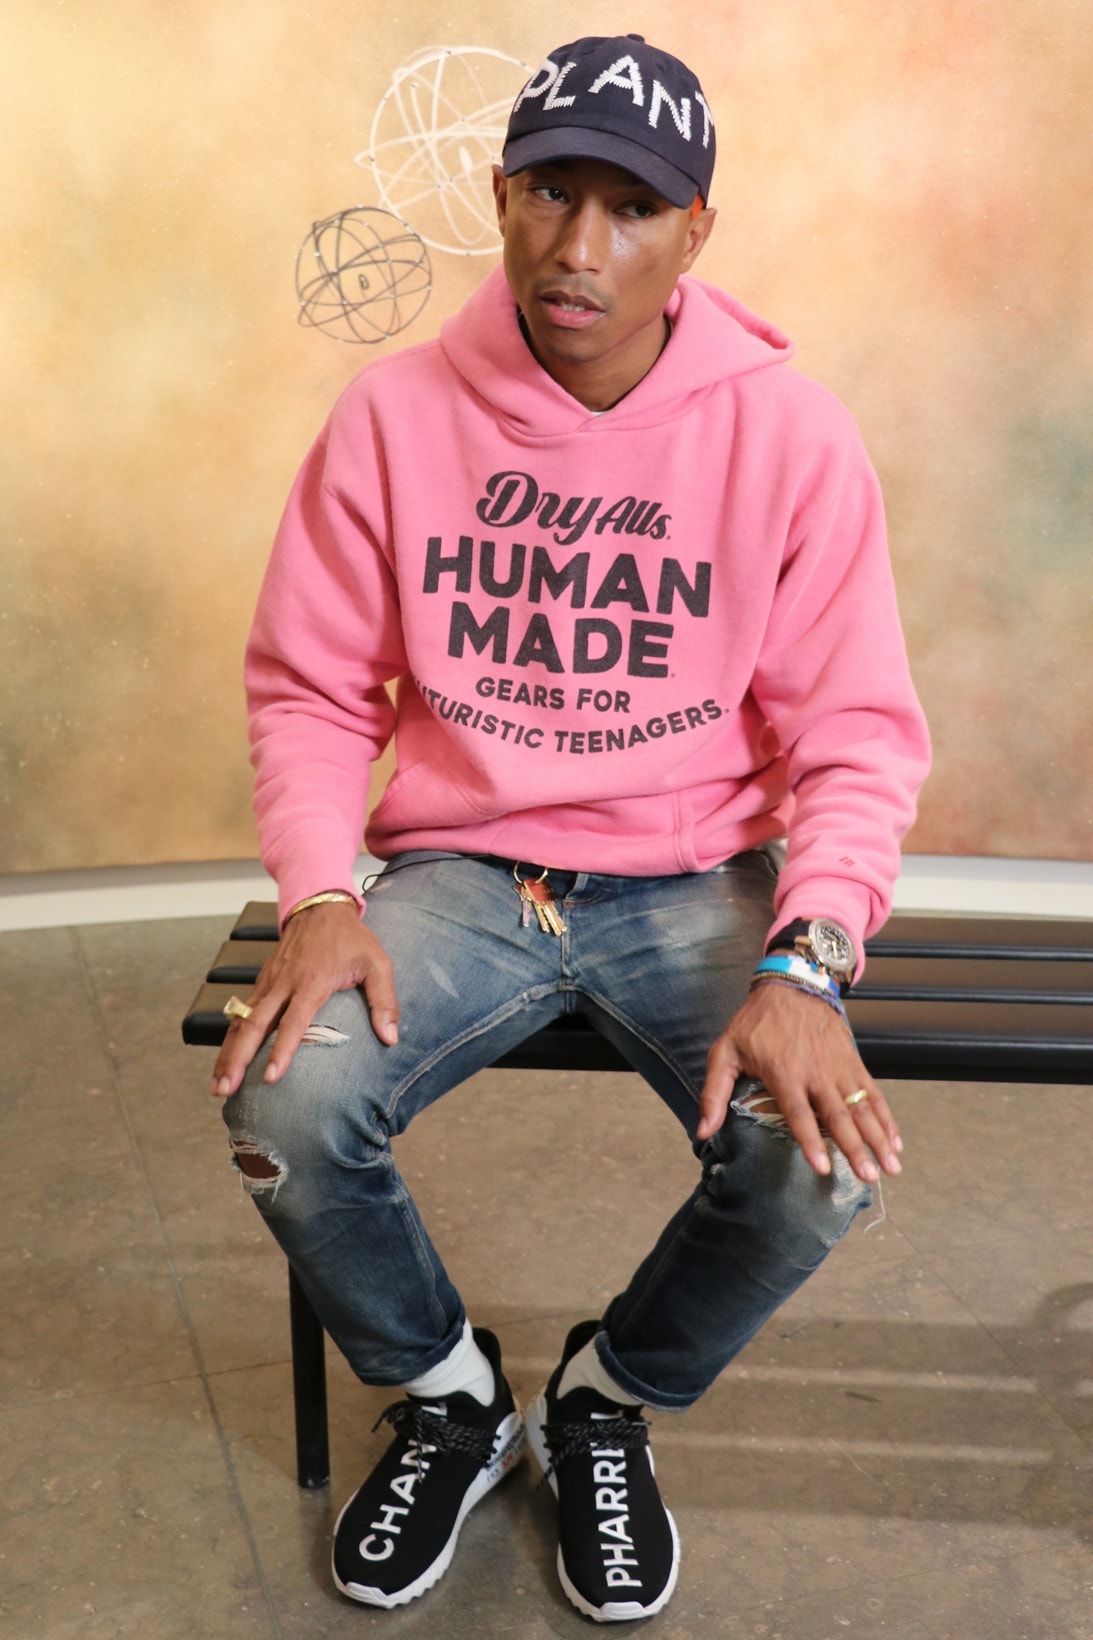 ファレル・ウィリアム自らが着用する世界で一足だけの Pharrell x Chanel x adidas Originals Hu NMDをチェック pharrell williams シャネル アディダス オリジナルス hypebeats ハイプビースト カスタマイズ 手書き メッセージ colette コレット